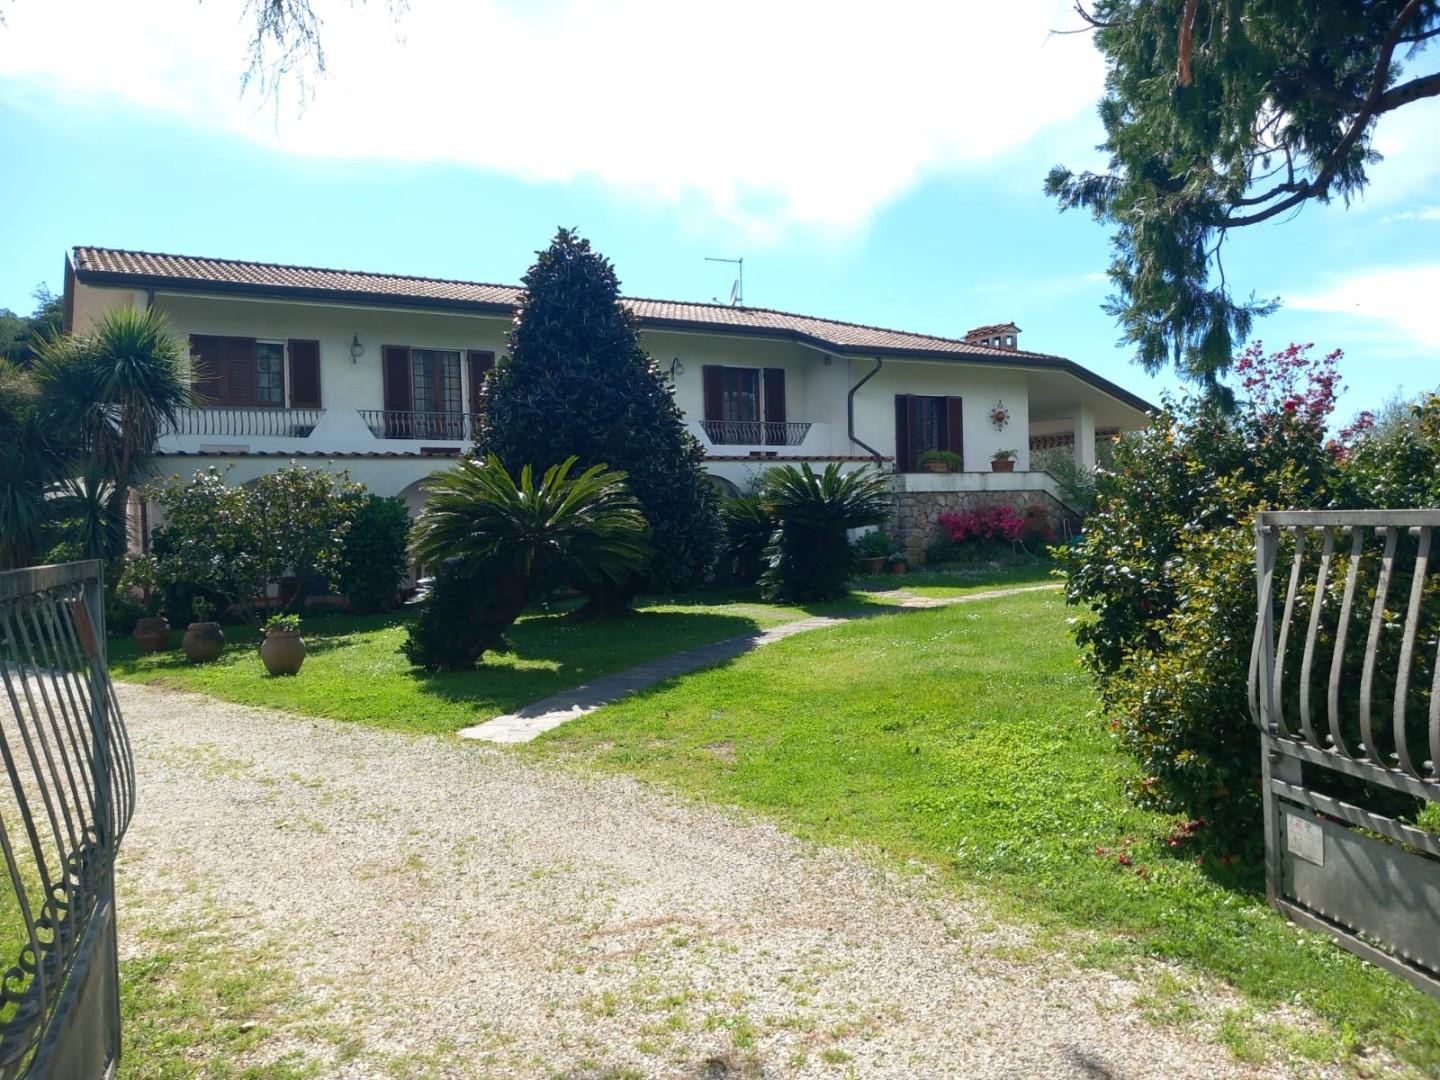 Villa arredata in affitto, Montignoso cervaiolo